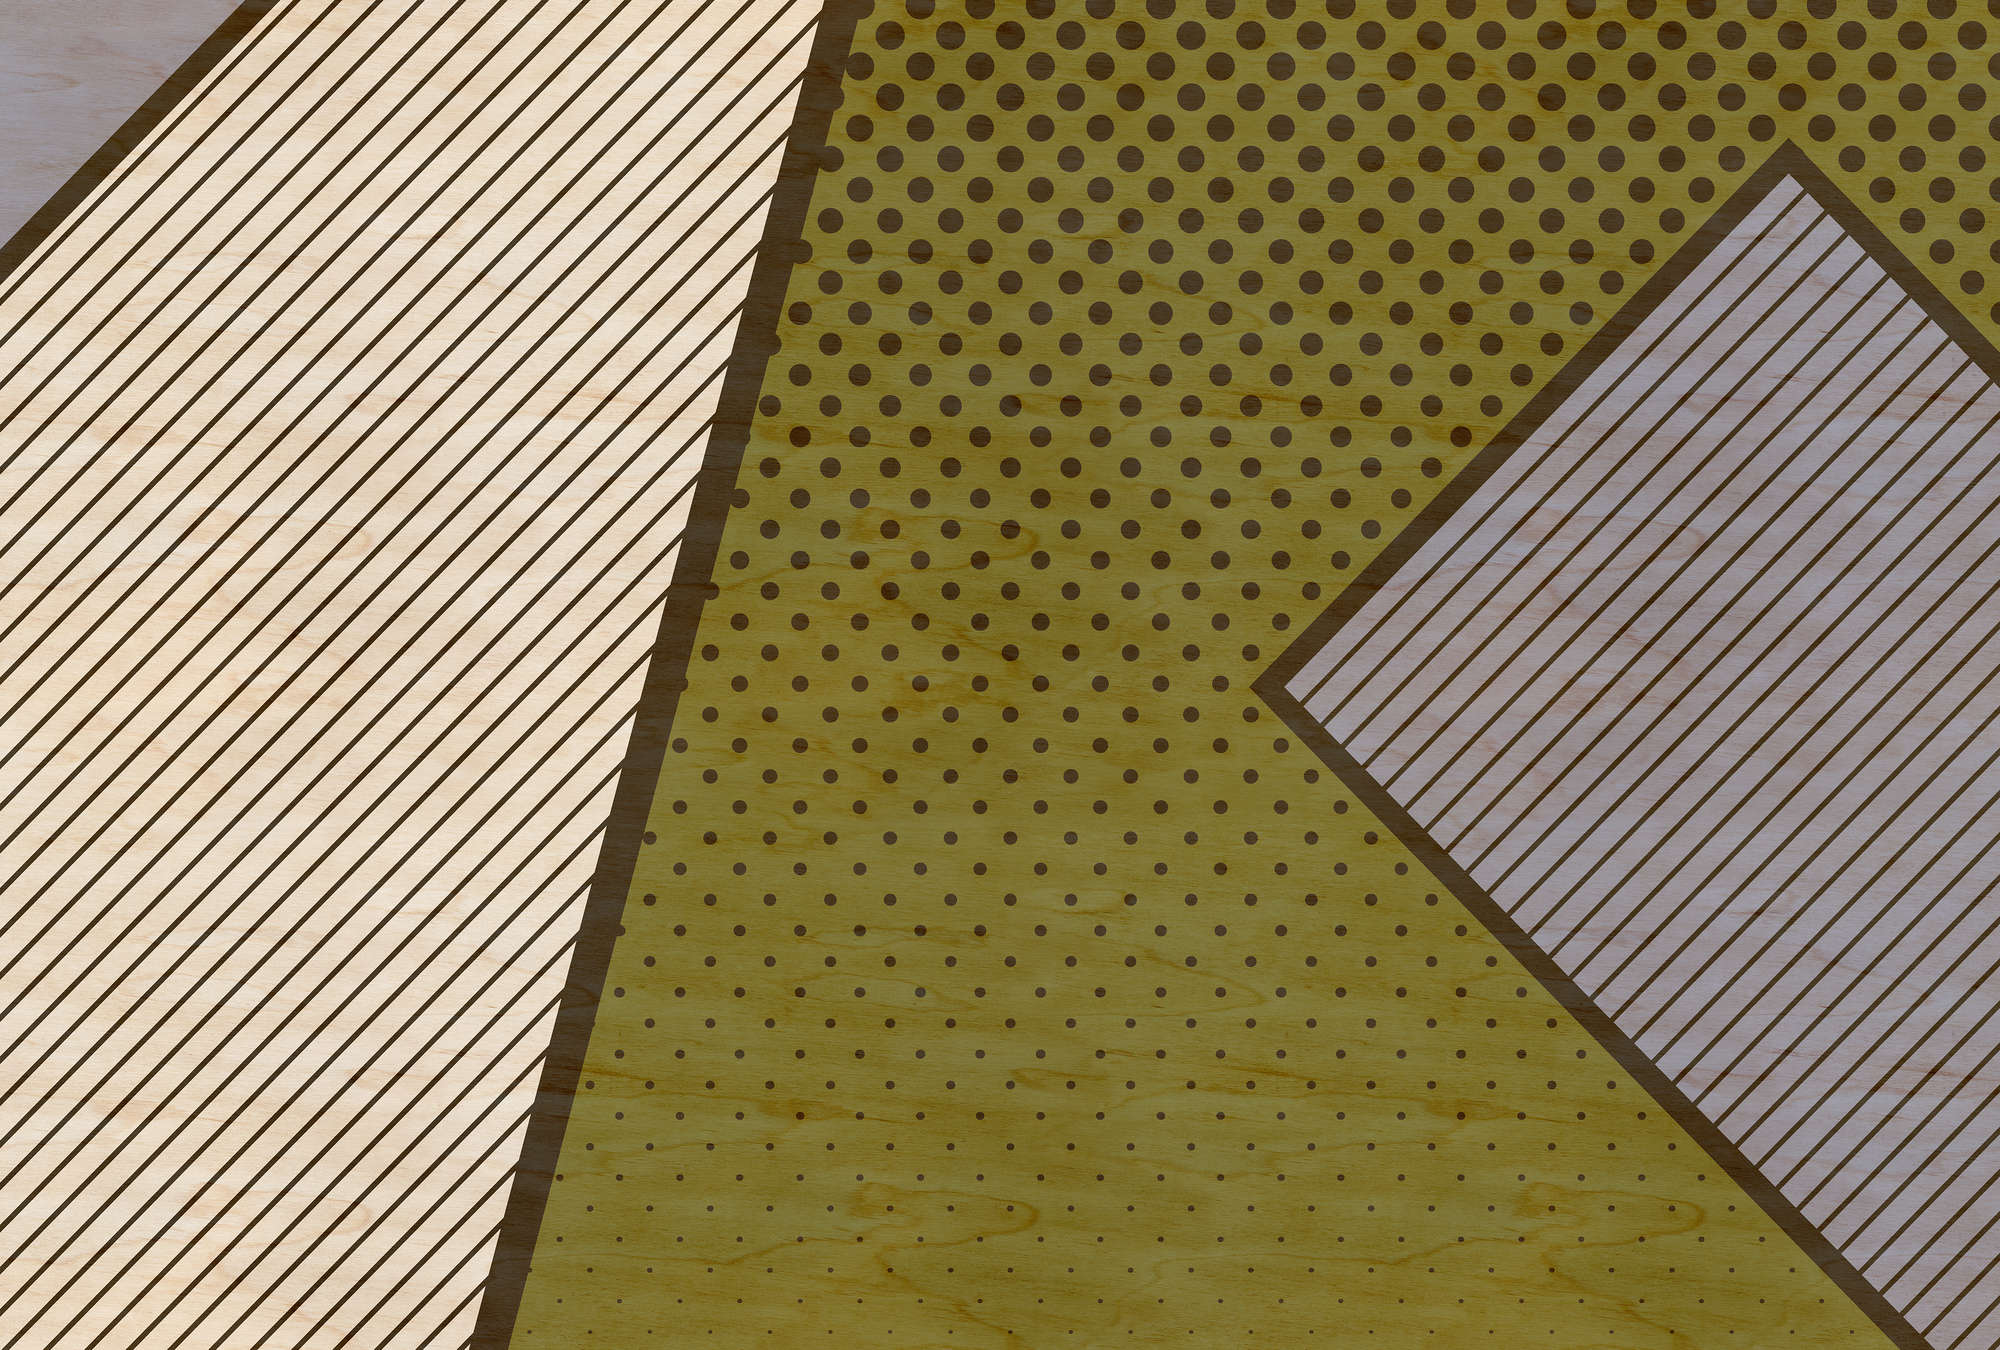             Bird gang 2 - papier peint, motif moderne style pop art - structure contreplaquée - beige, jaune | intissé lisse mat
        